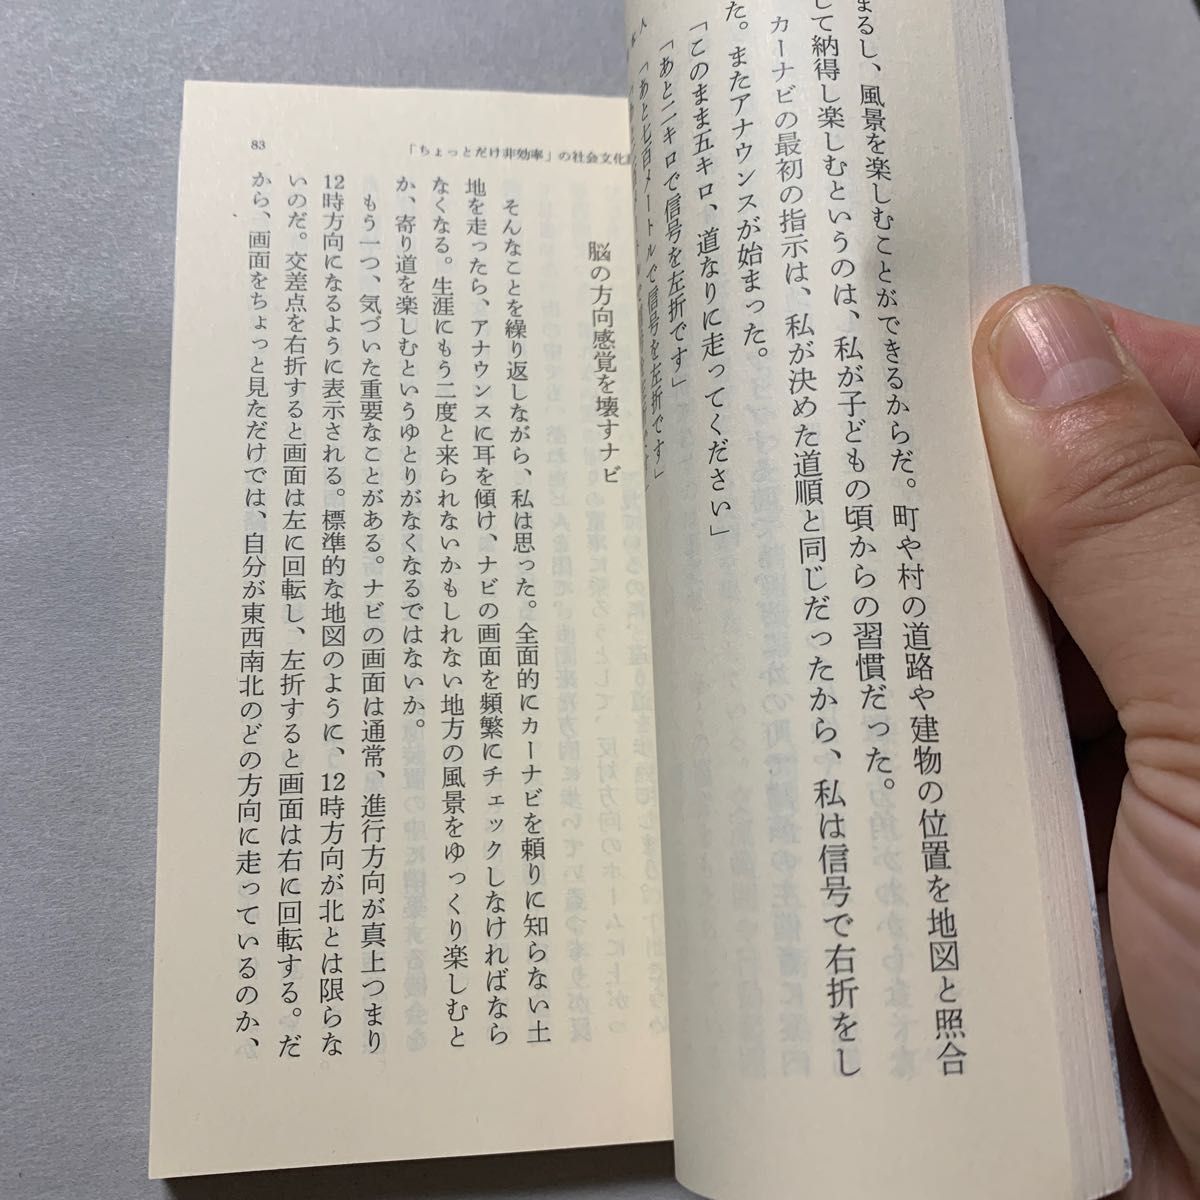 壊れる日本人　ケータイ・ネット依存症への告別 （新潮文庫　や－８－２０） 柳田邦男／著